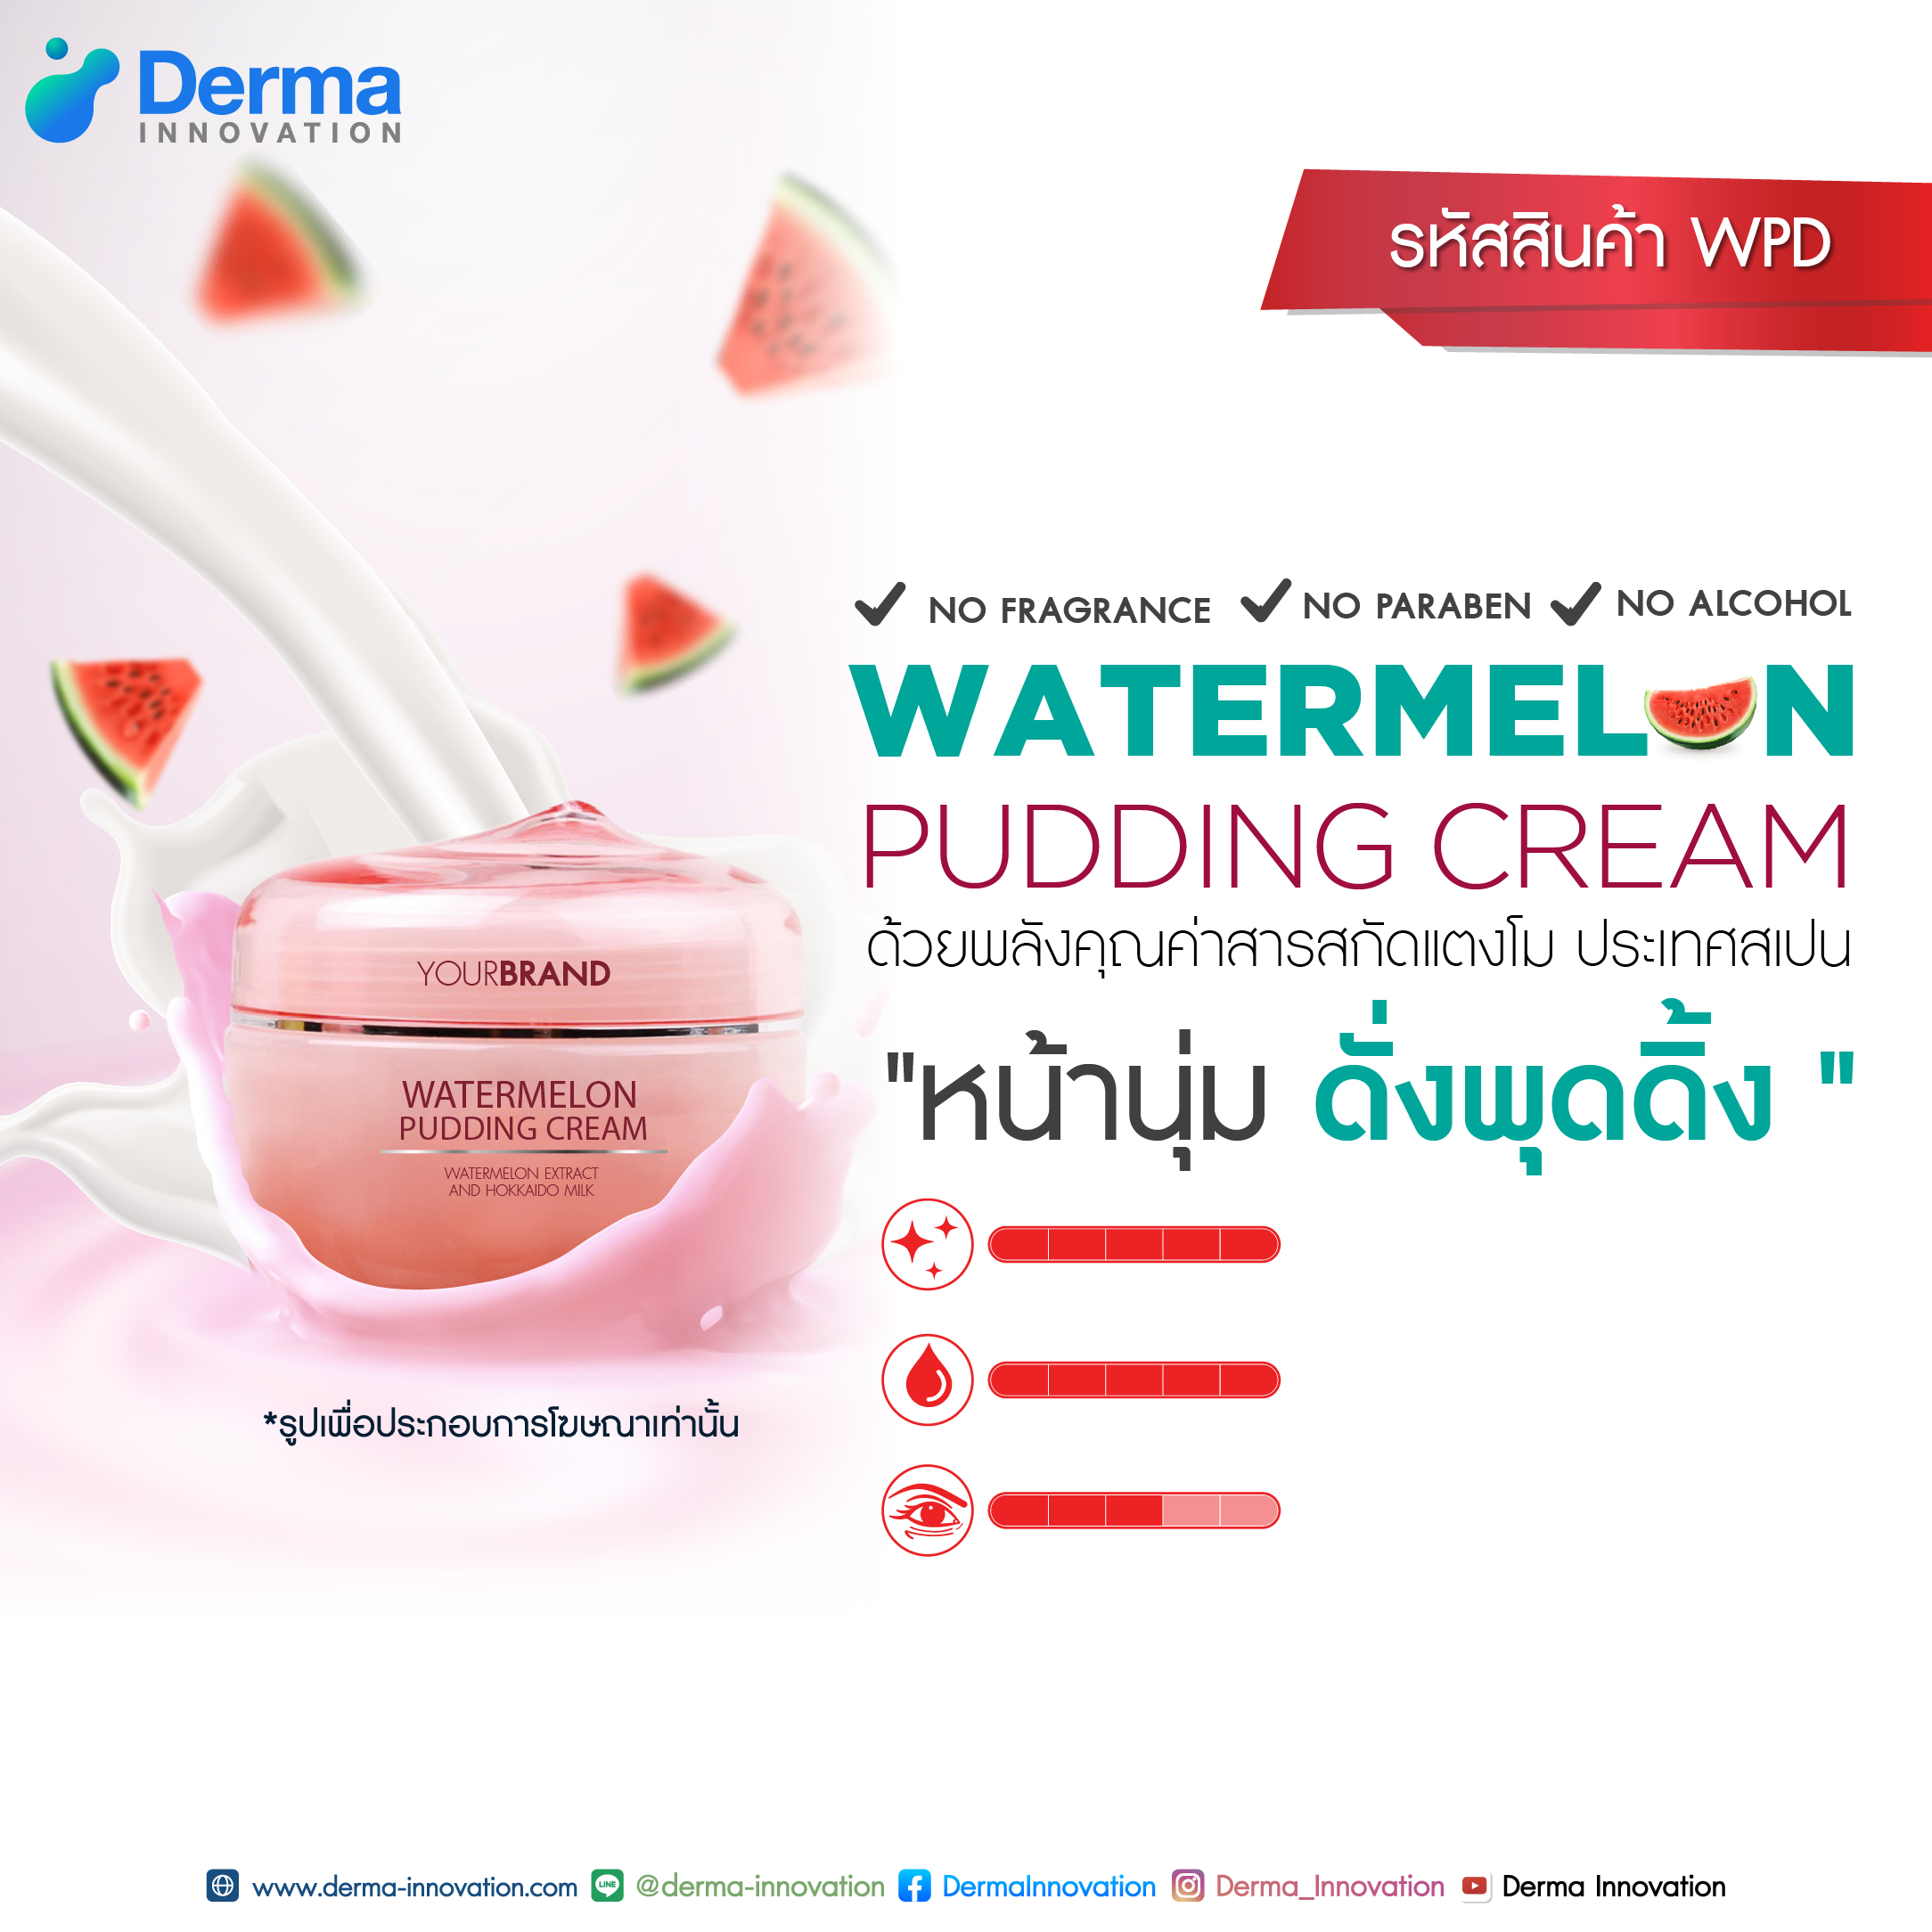 Watermelon Pudding Cream